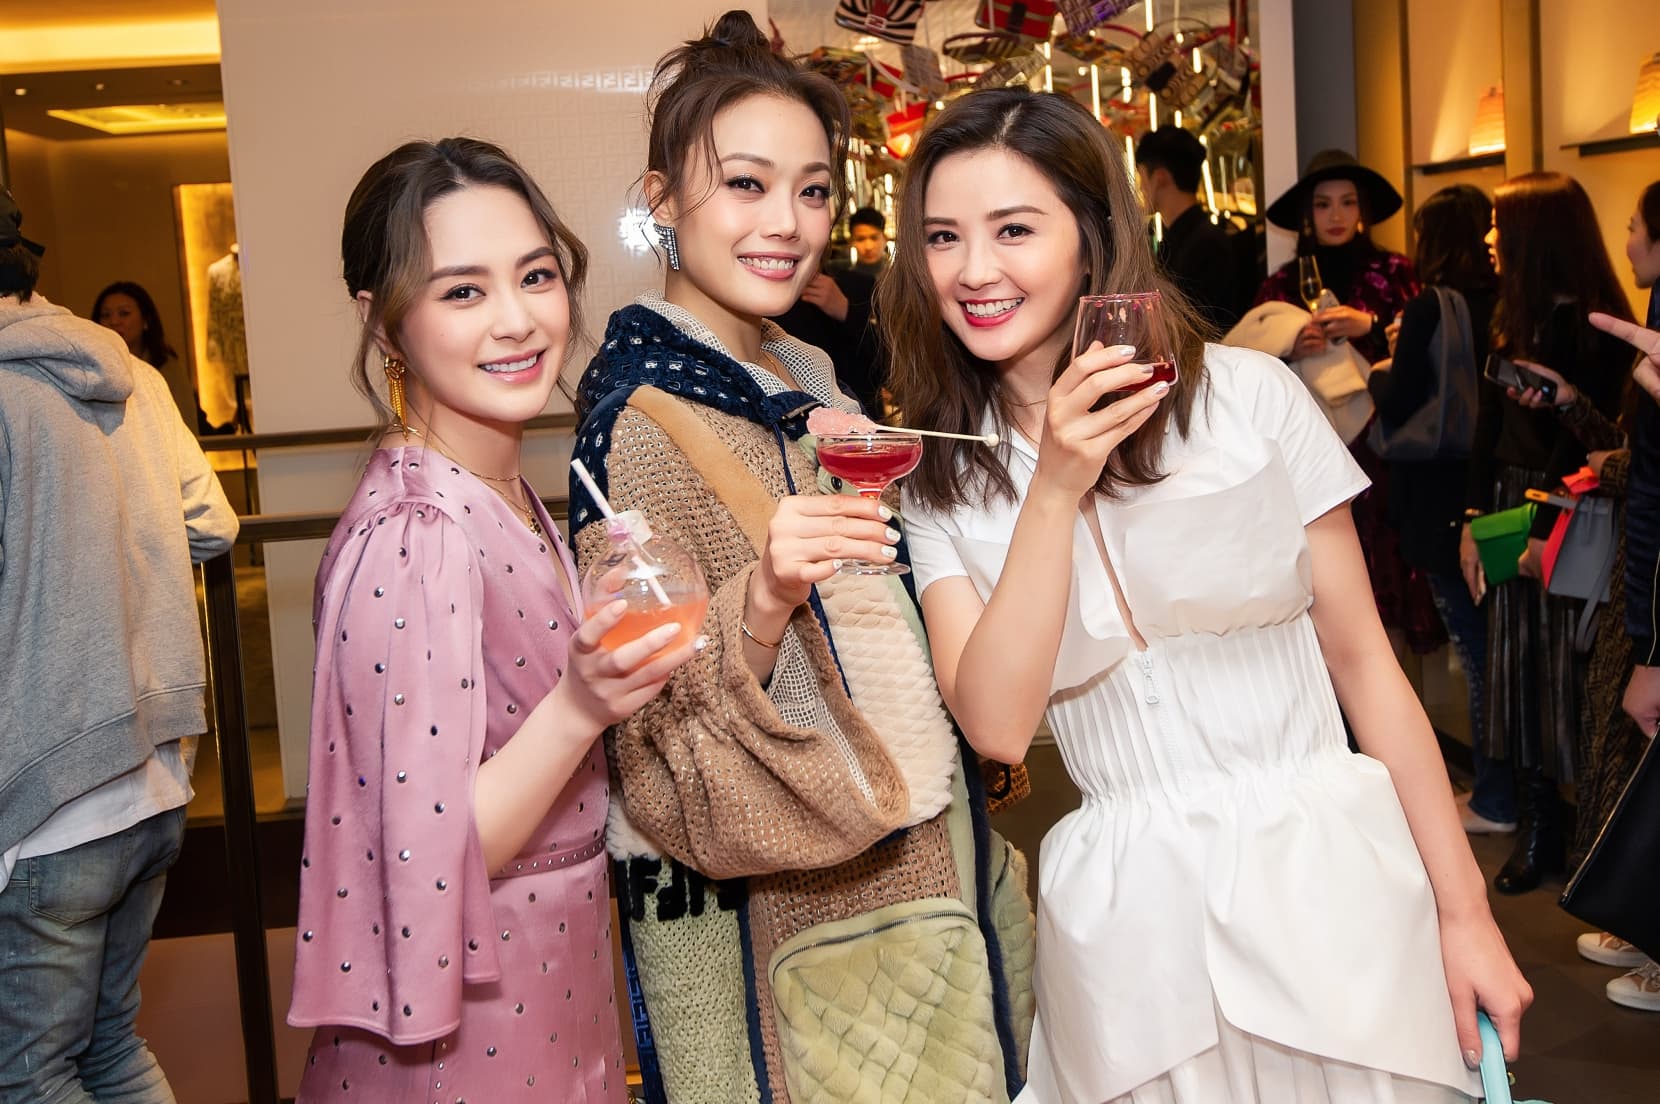 Fendi Celebrates Its Famous Baguette Bag With a Cocktail Party